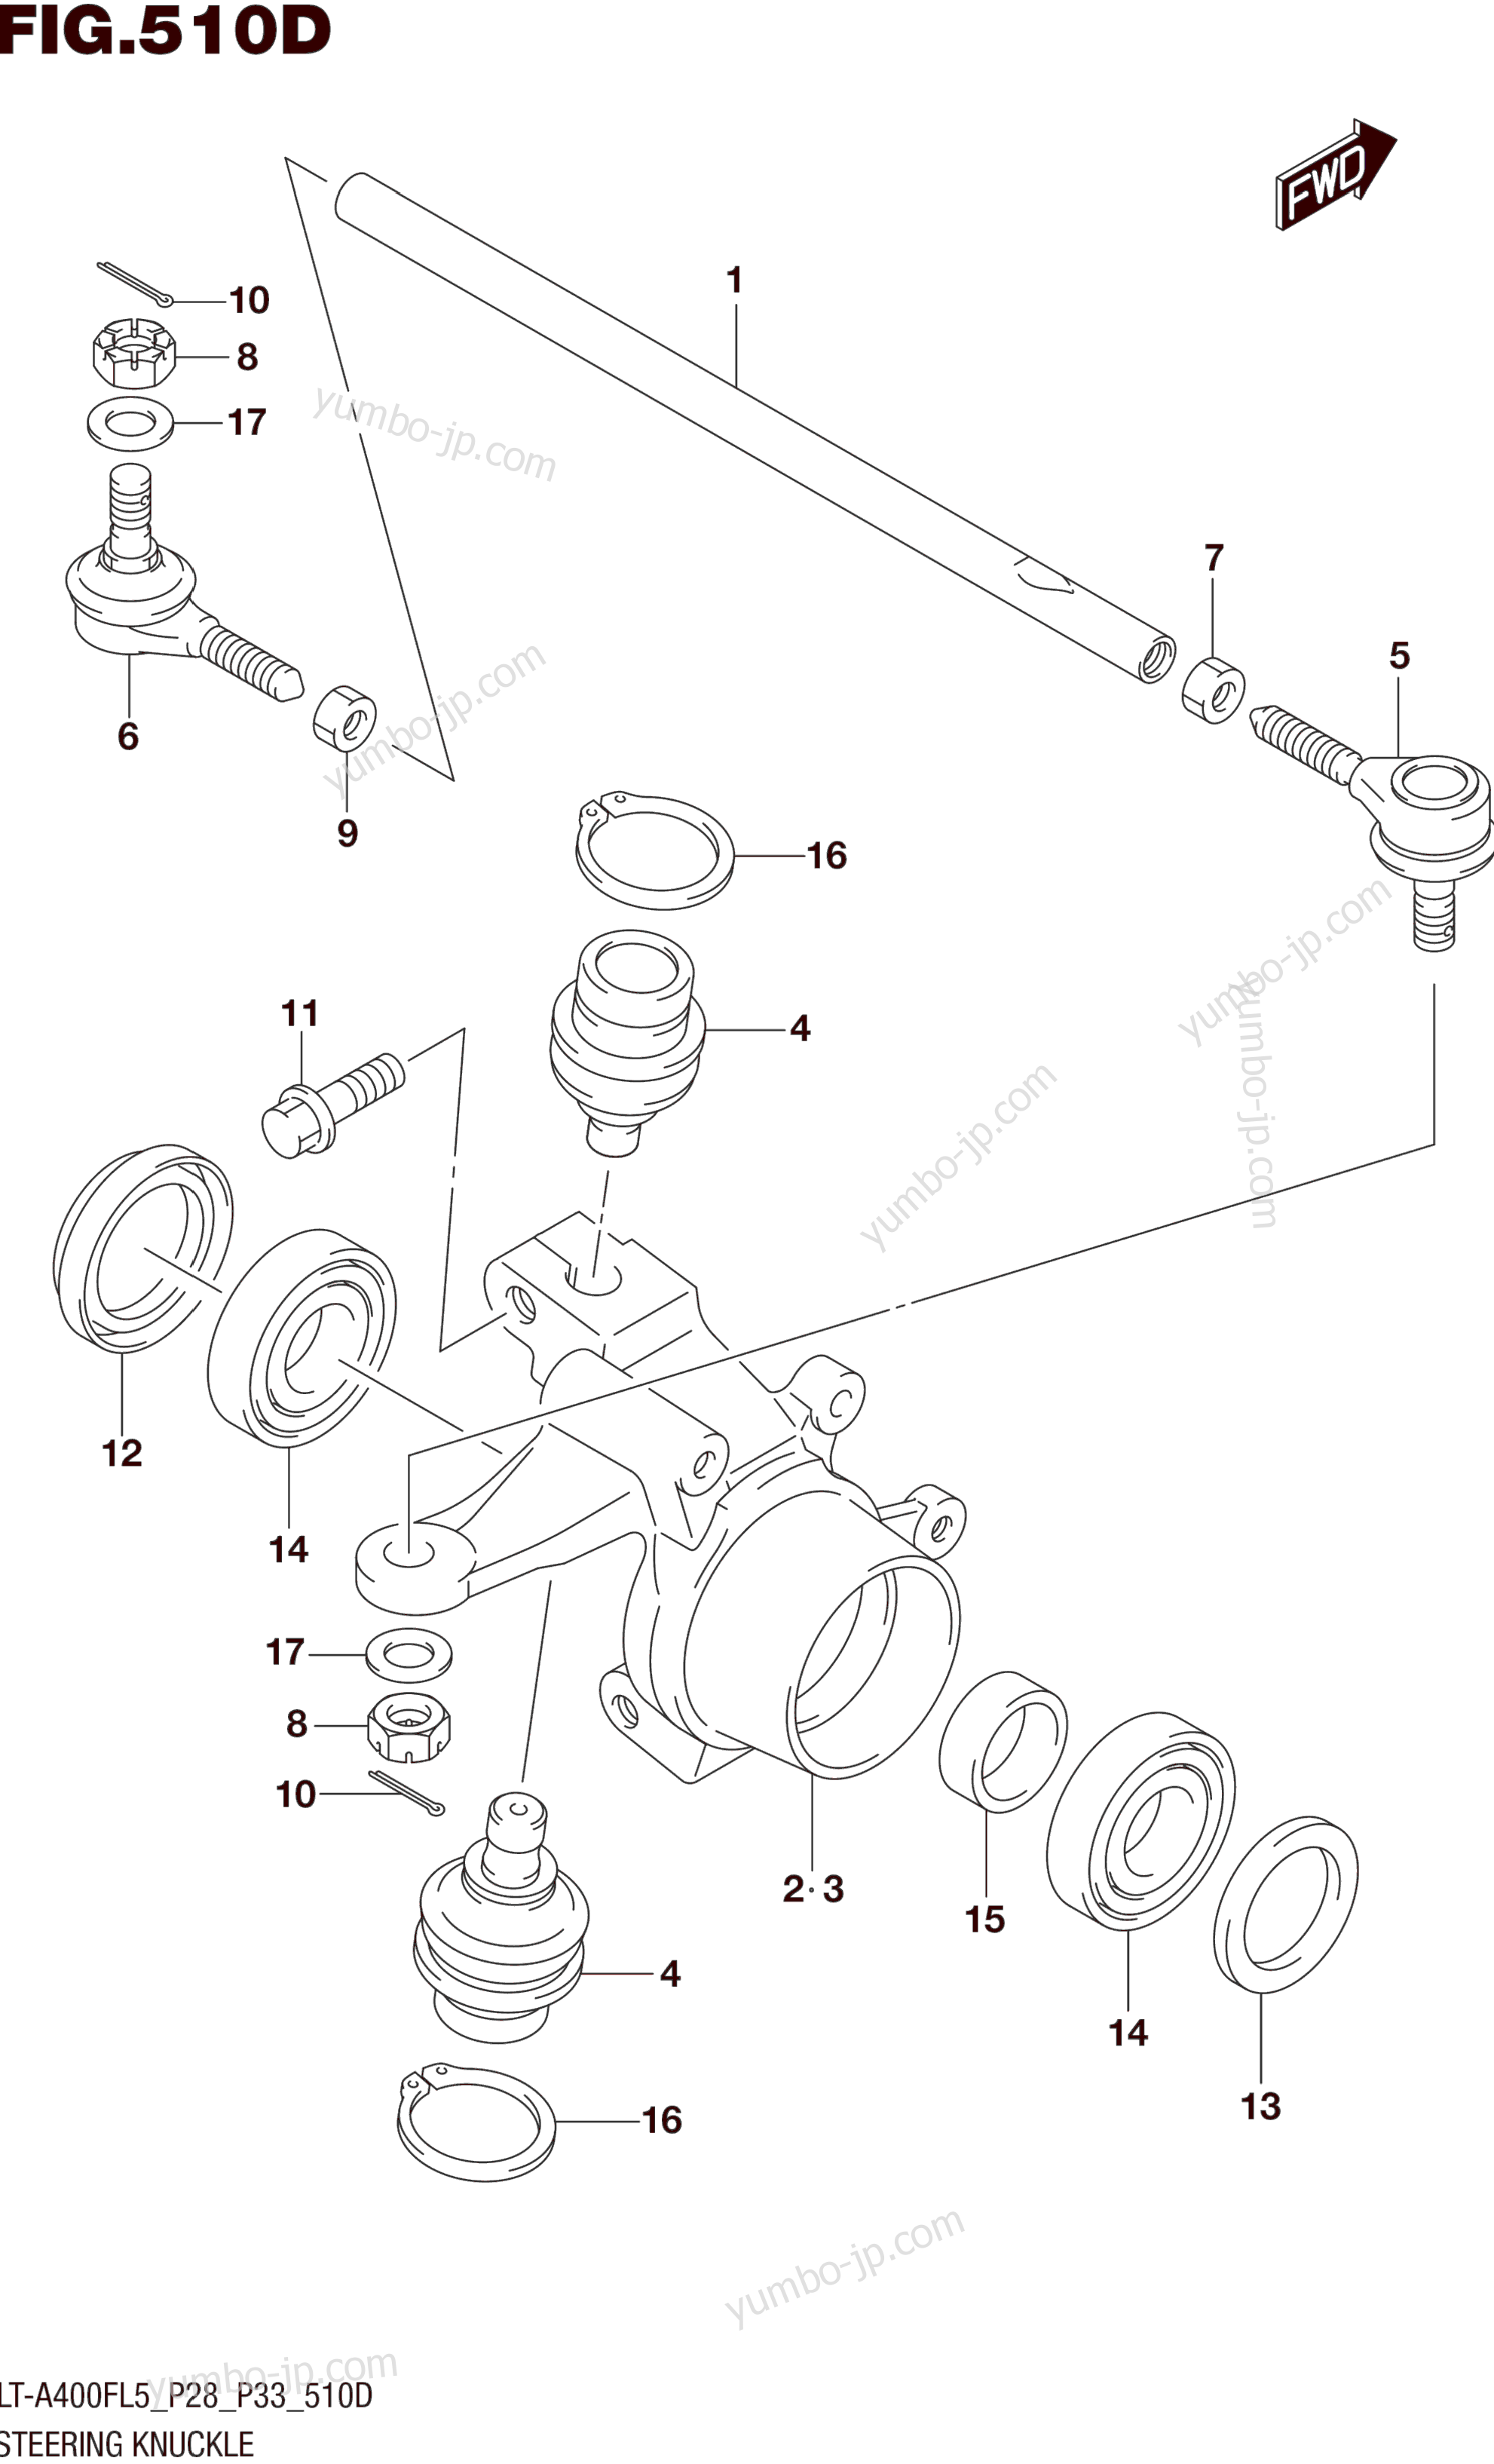 STEERING KNUCKLE (LT-A400FZL5 P33) для квадроциклов SUZUKI LT-A400FZ 2015 г.